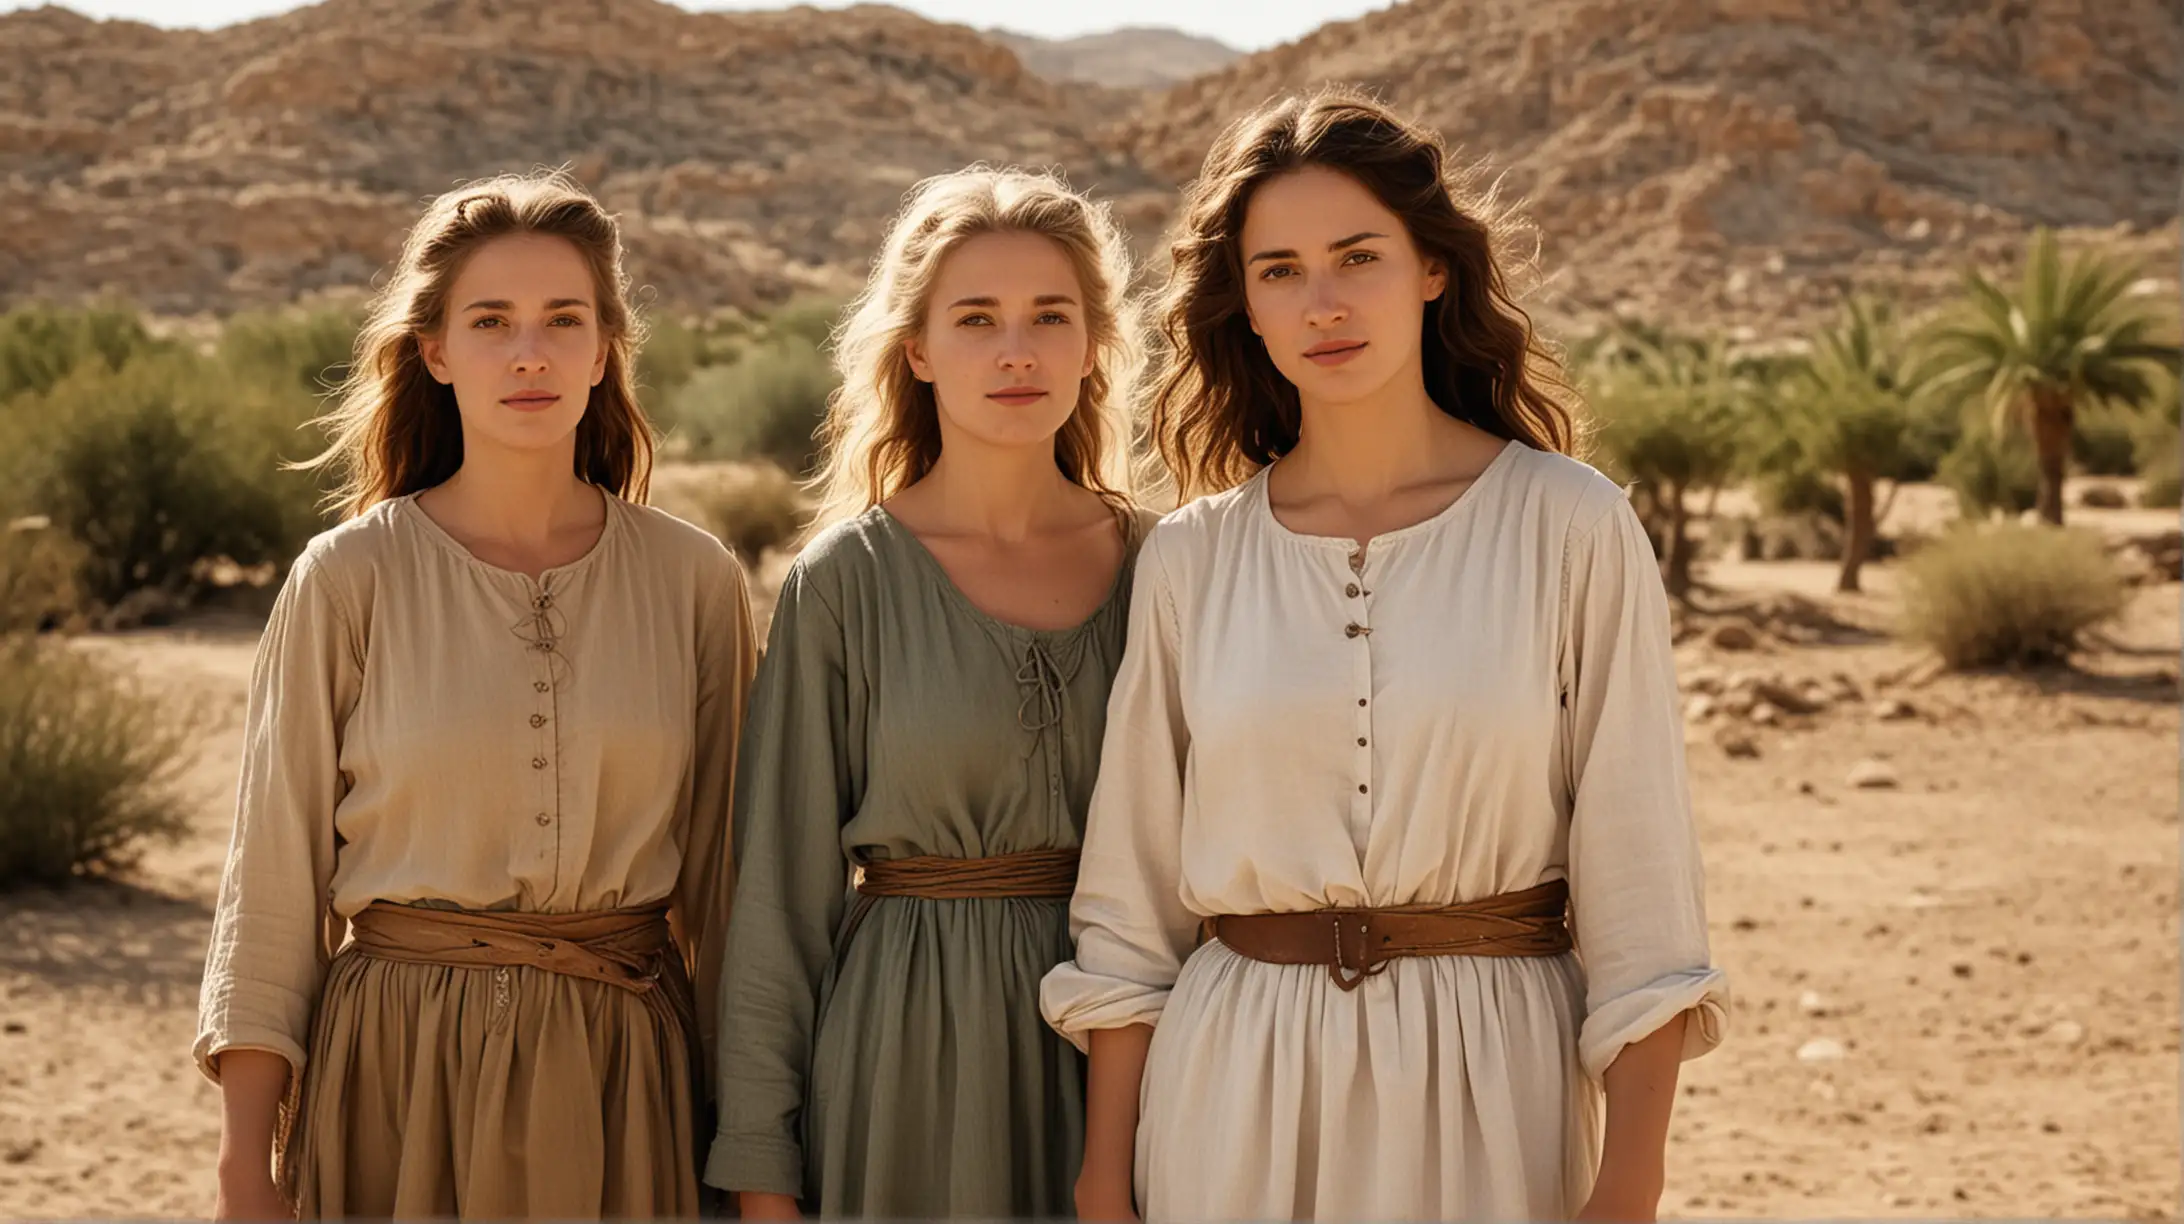 Three Women in Biblical Era Desert Farm Scene